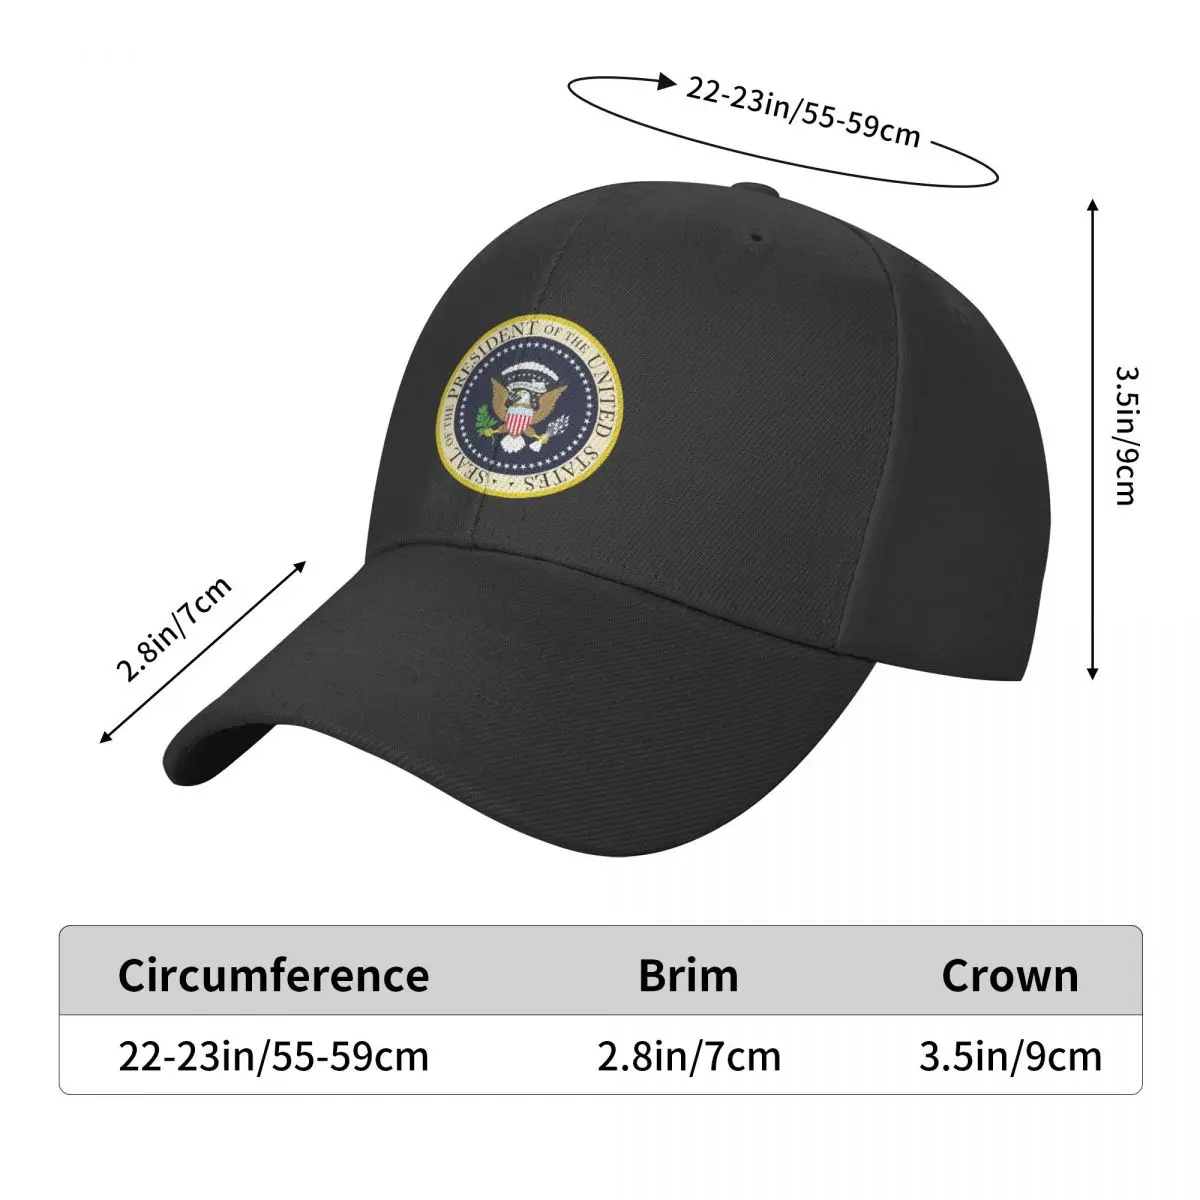 Новая американская стандартная бейсбольная кепка для женщин и мужчин, регулируемая американская шляпа с избирательным голосом Трампа